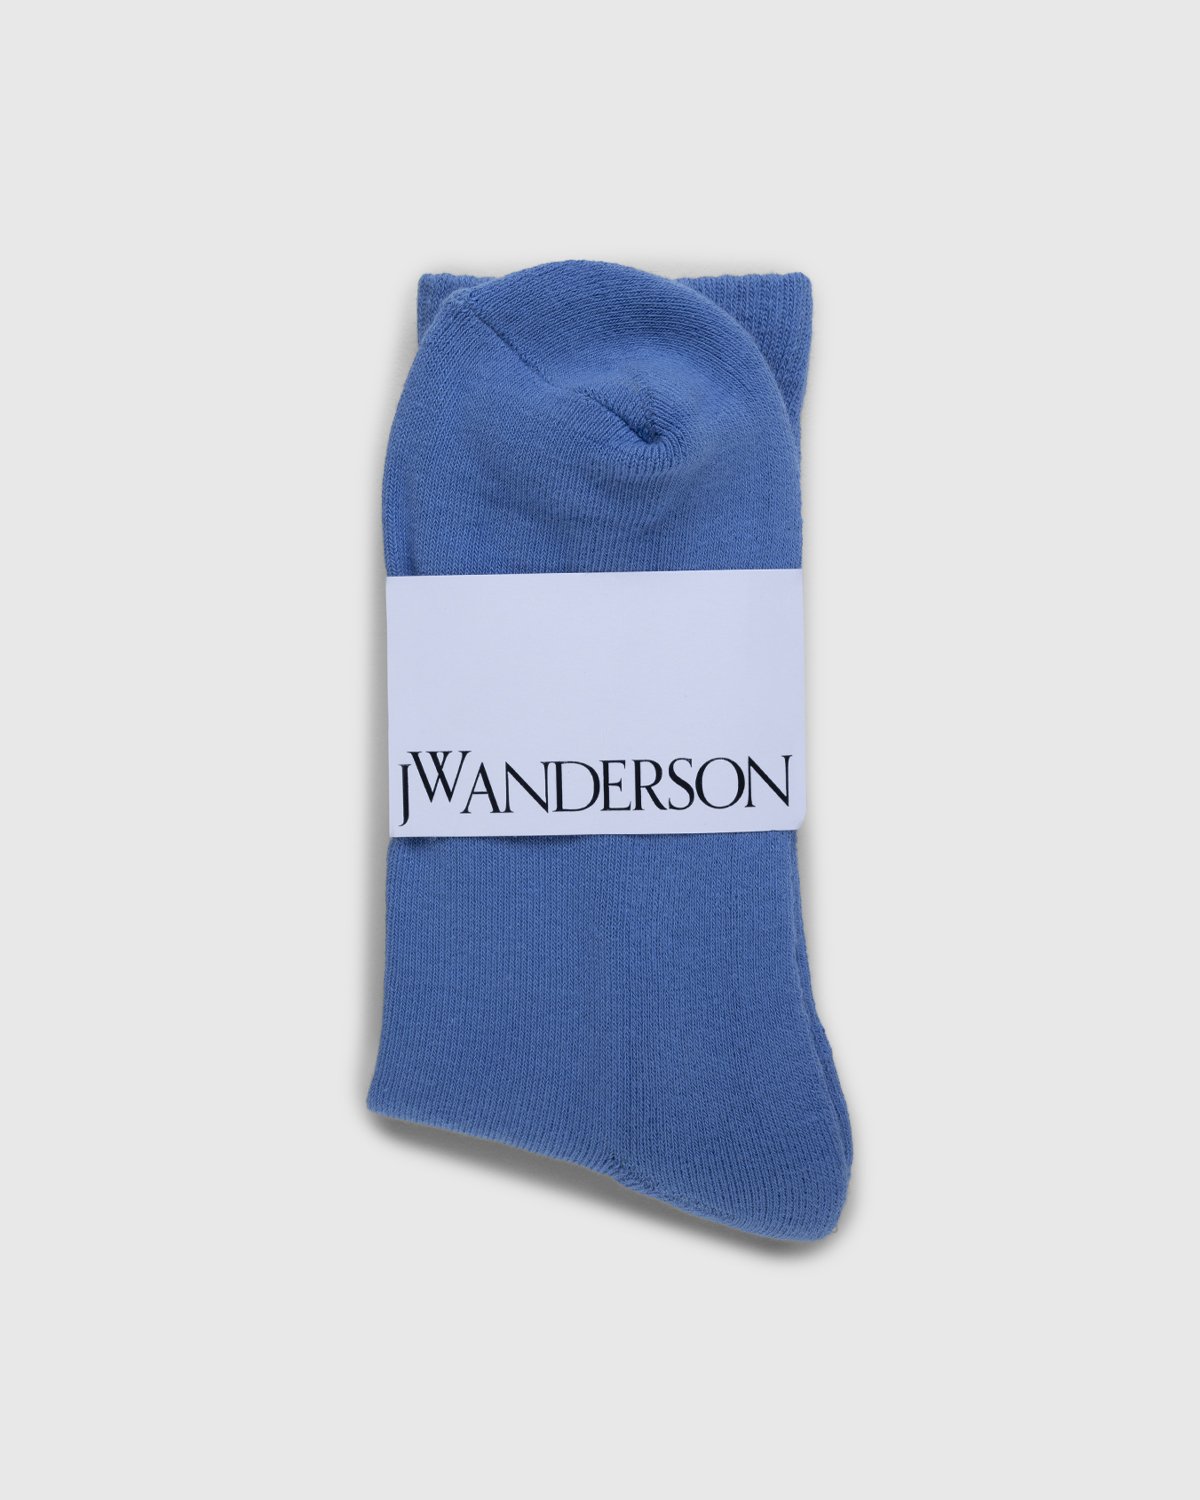 J.W. Anderson - Handwritten JWA Logo Short Ankle Socks Light Blue - Accessories - Blue - Image 2